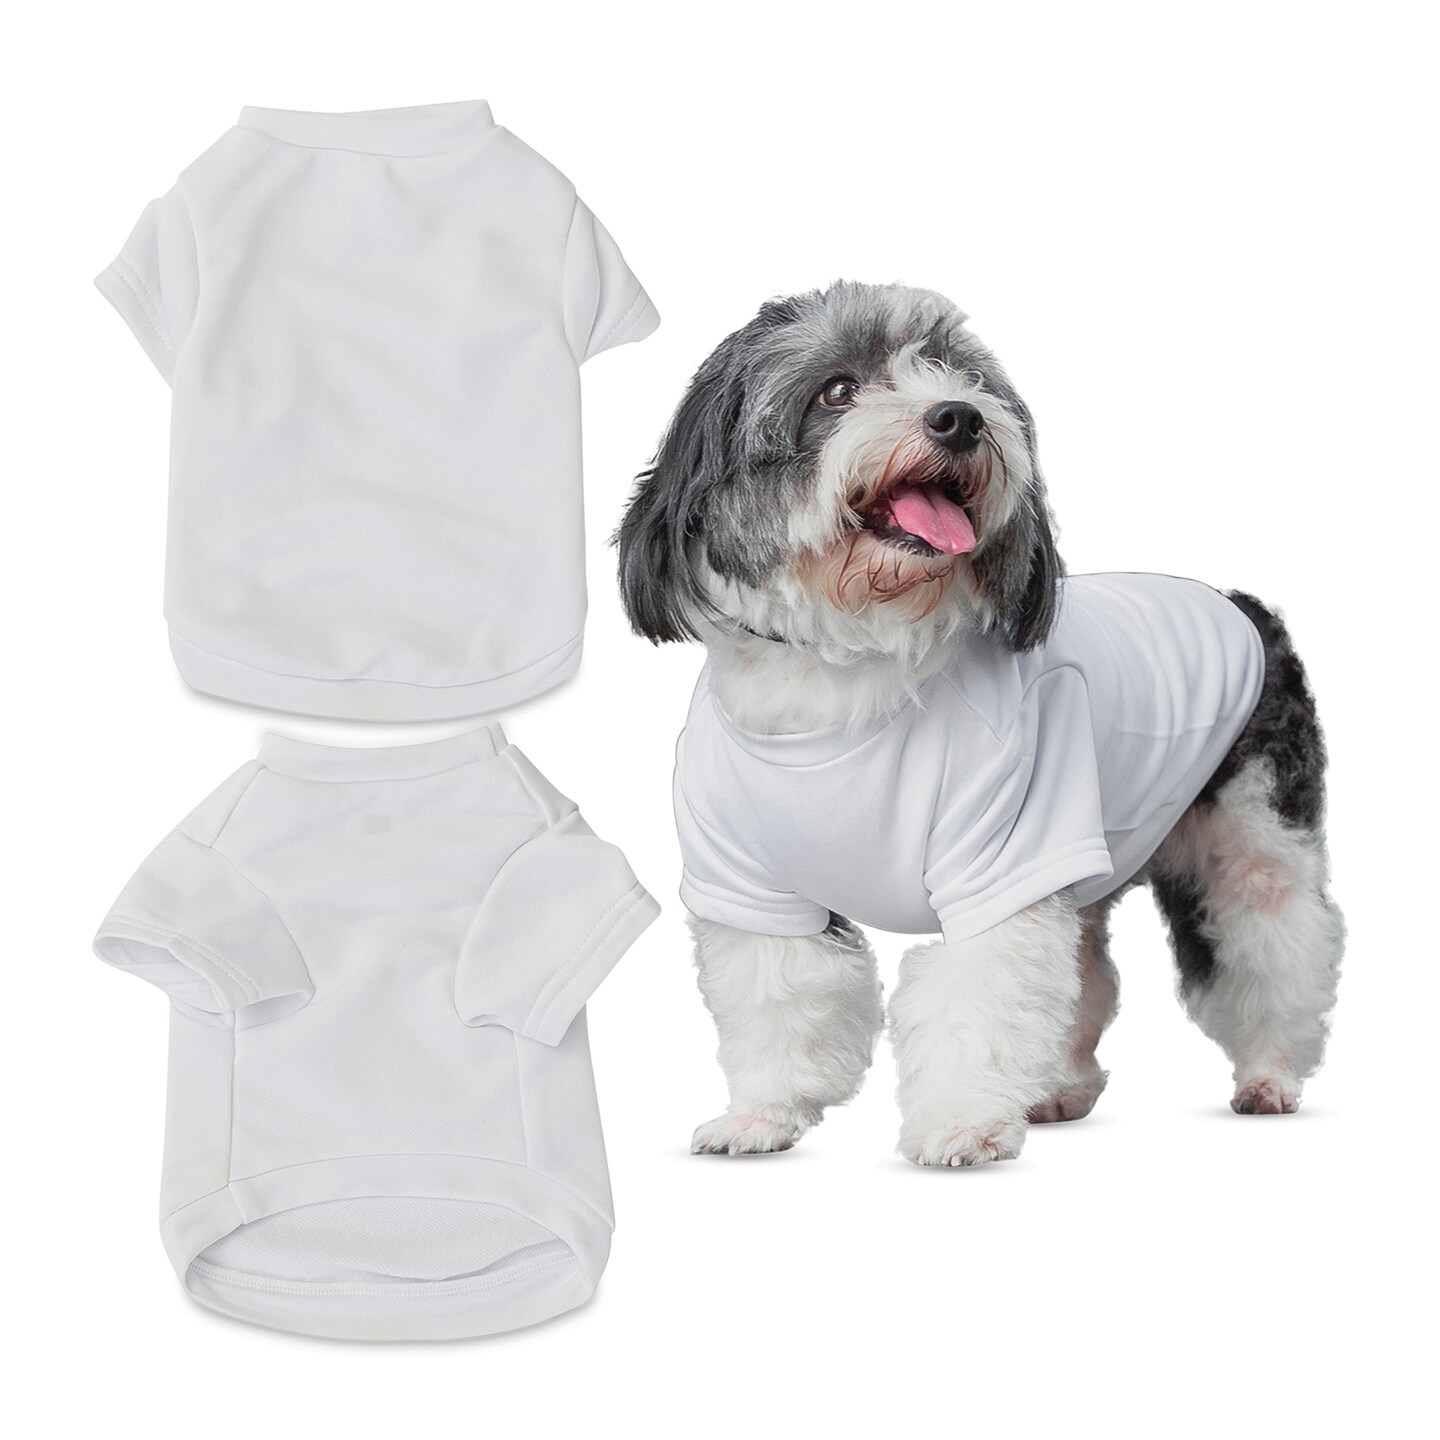 Craft Express Sublimation Printing Pet Product - Pet T-Shirt, Medium, Pkg of 2